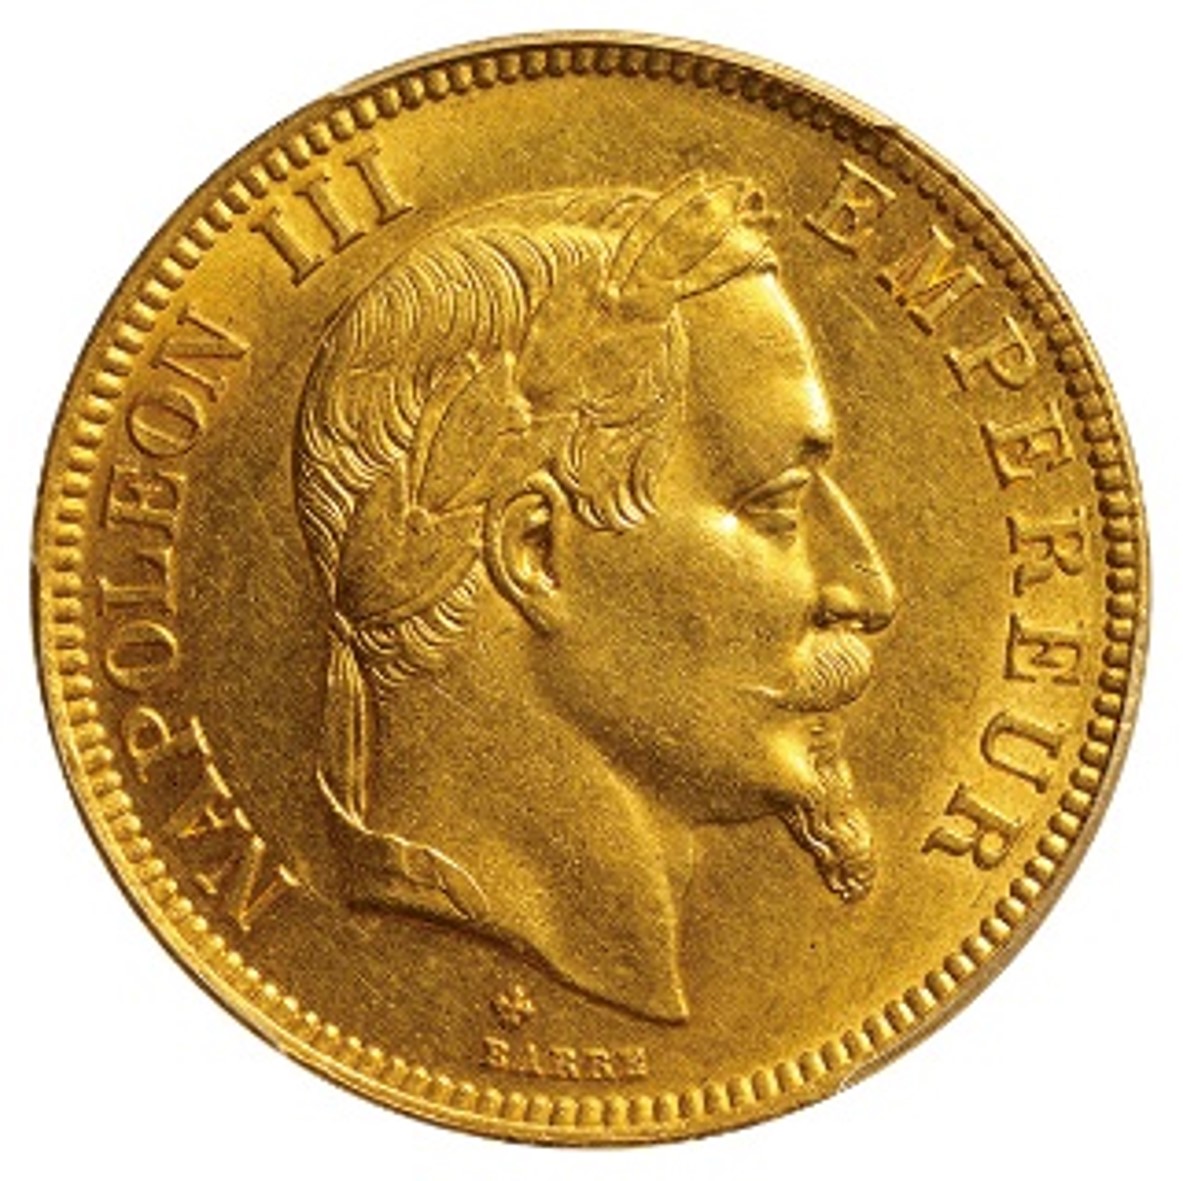 フランス ナポレオン3世 (1852-1870) 100フラン金貨 1868(BB) 希少年号